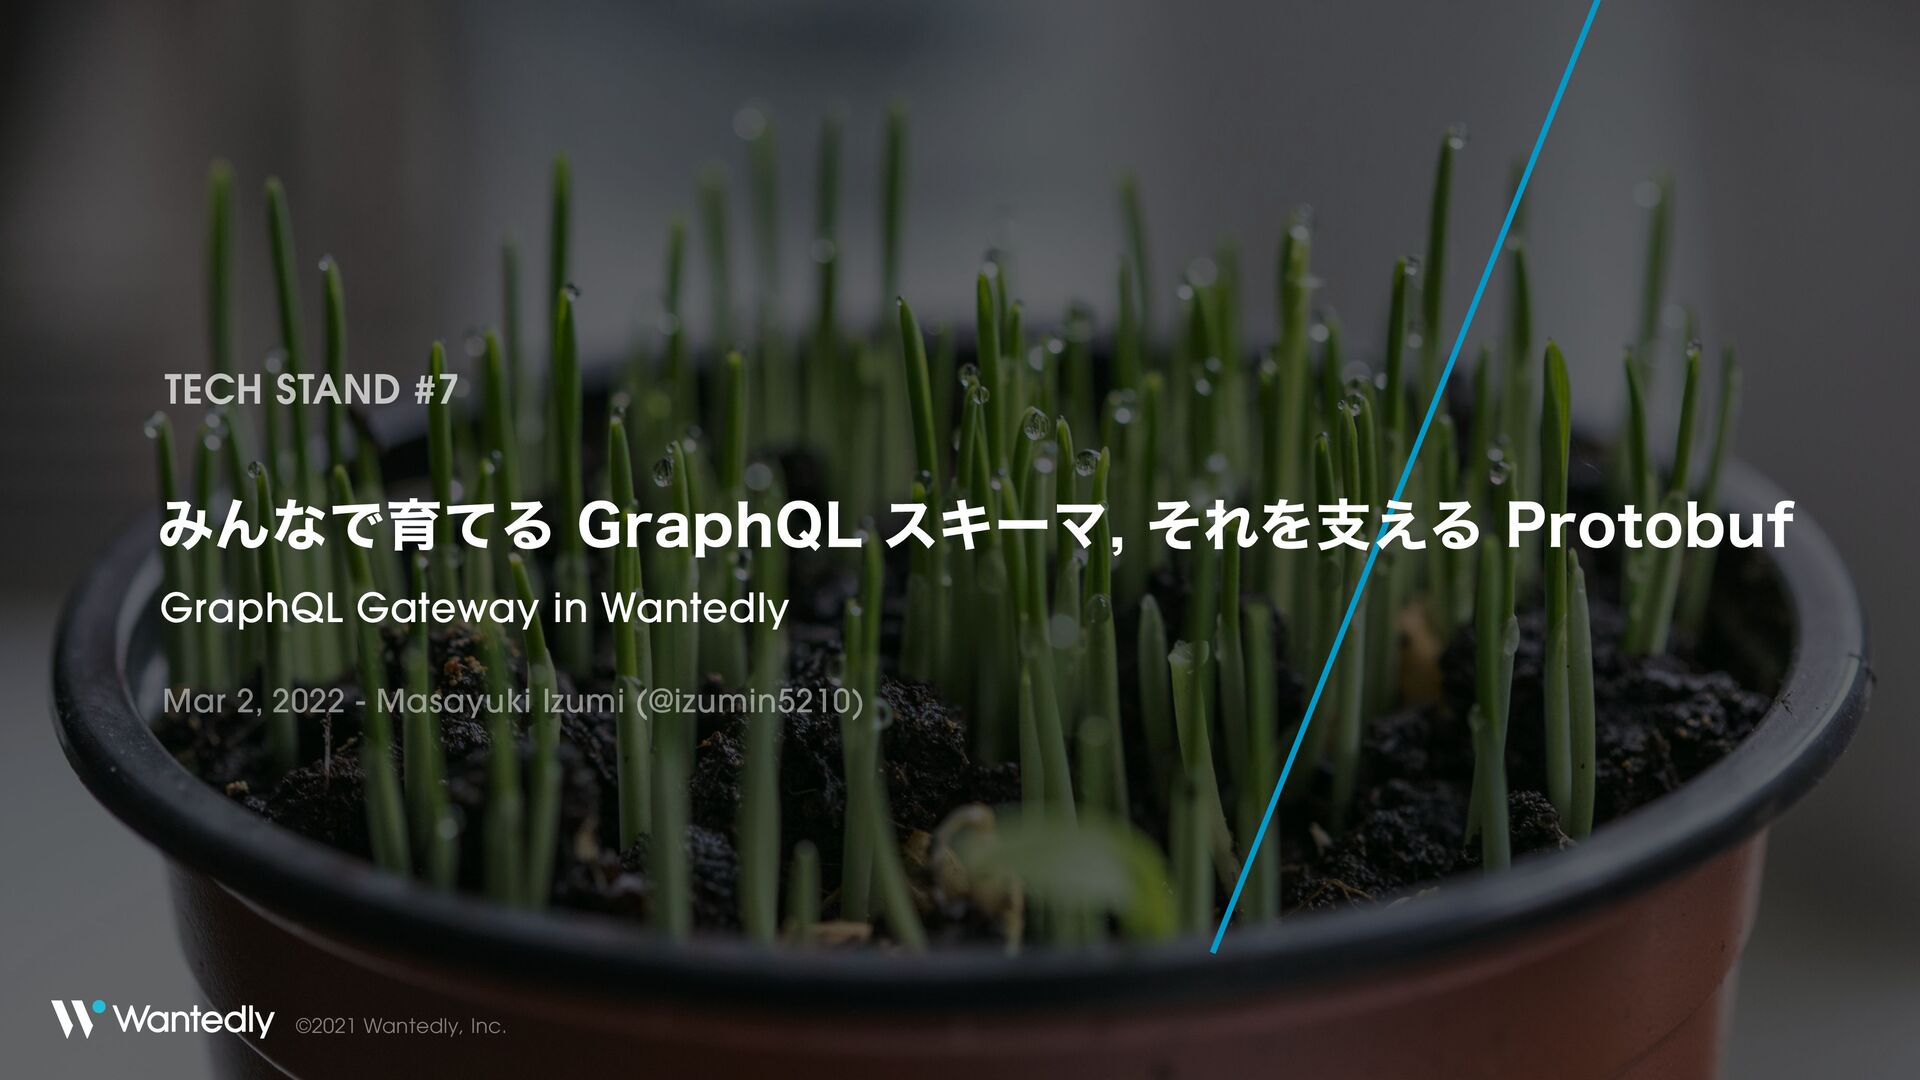 みんなで育てる GraphQL スキーマ, それを支える Protobuf / GraphQL and Protobuf #tech_stand 